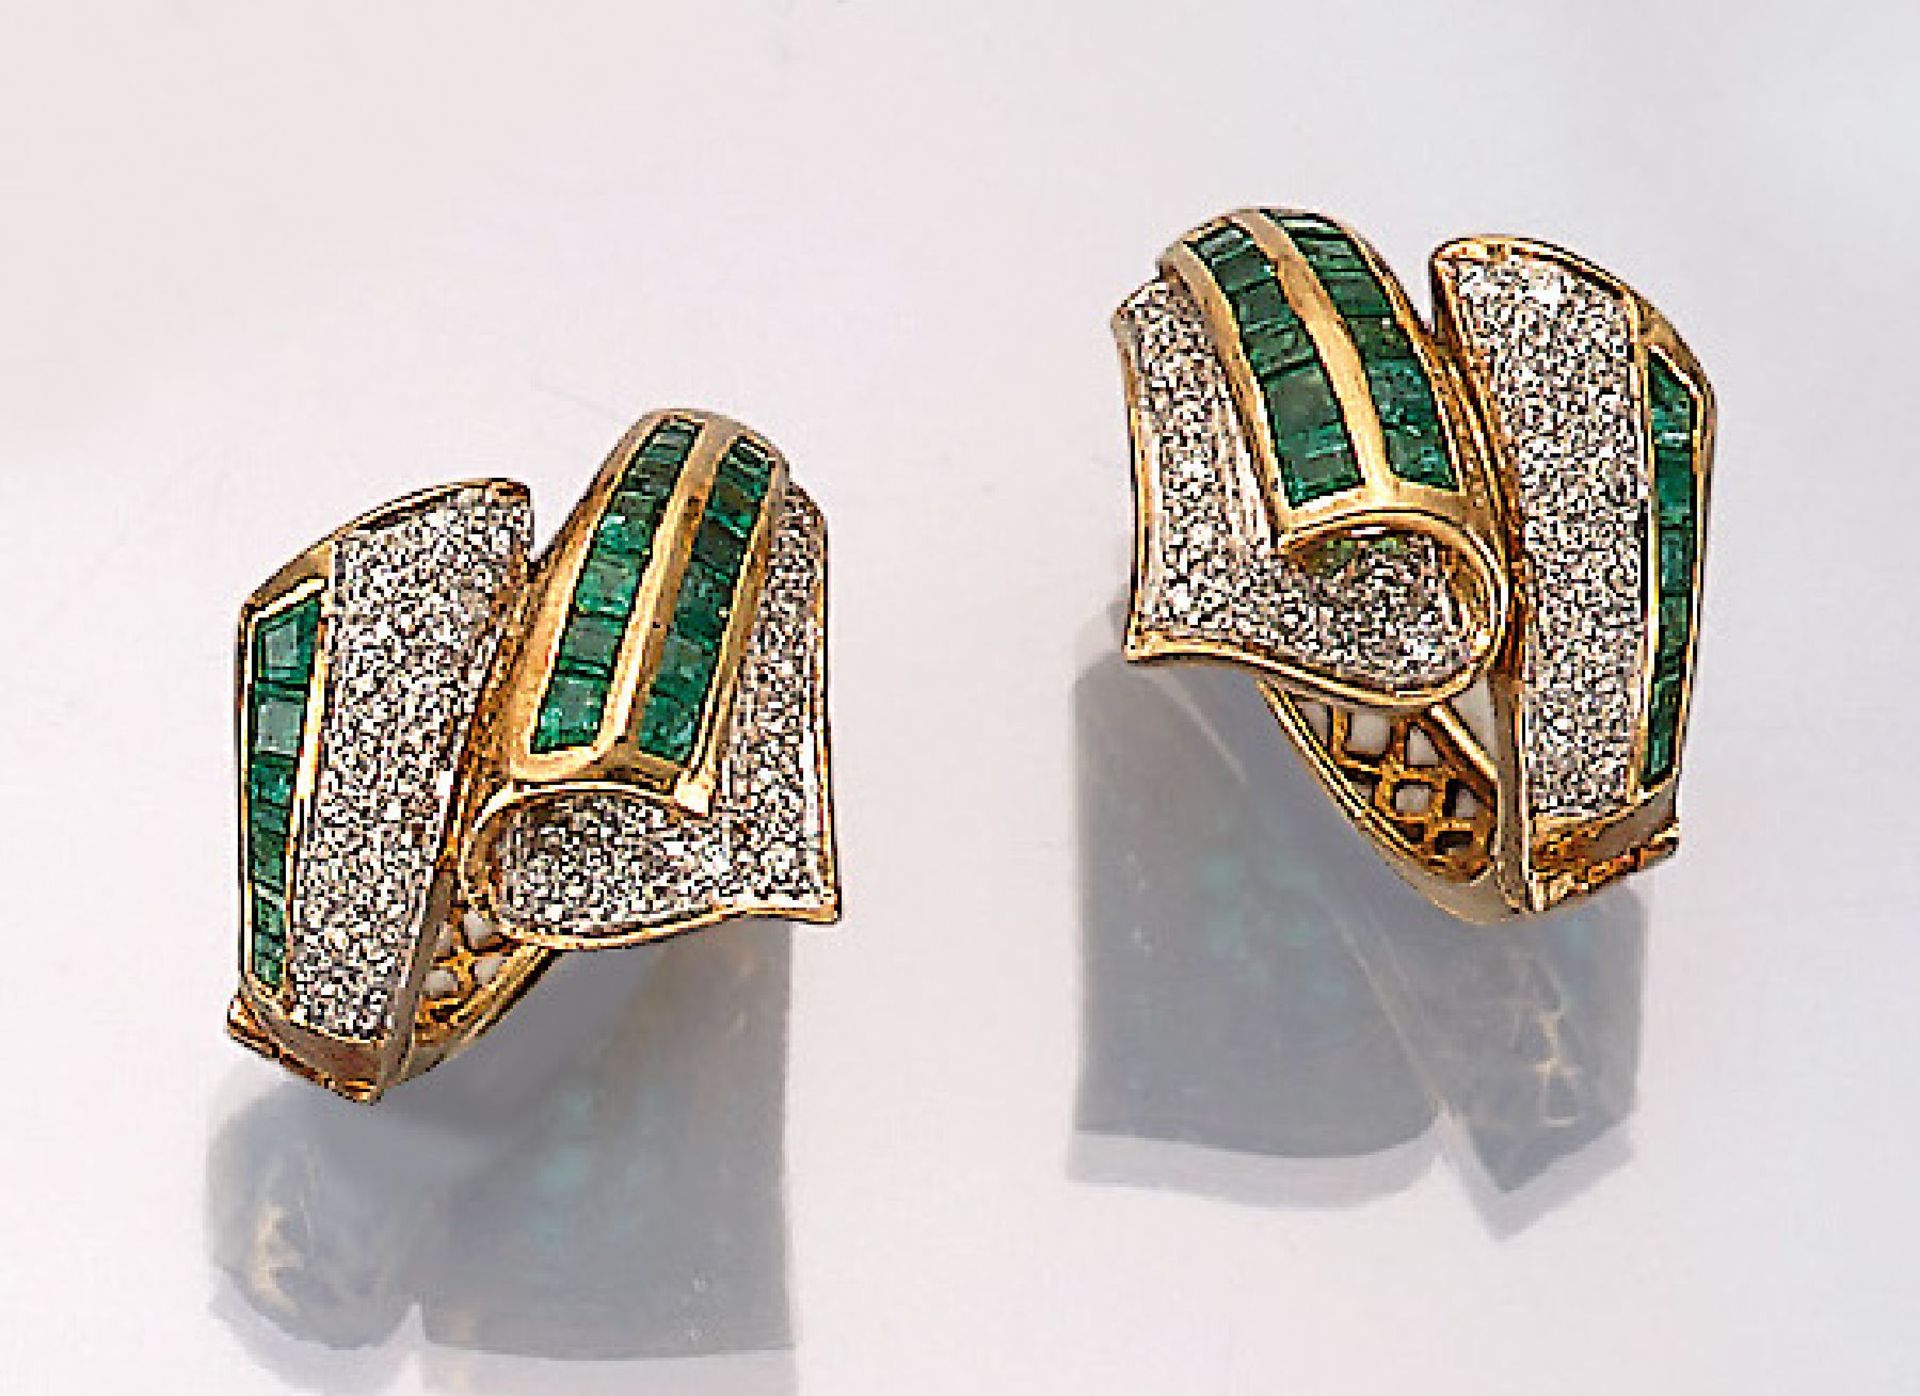 Paar 18 kt Gold Ohrcreolen mit Smaragden und Diamanten, GG 750/000, facett. Smaragd- carrees zus.